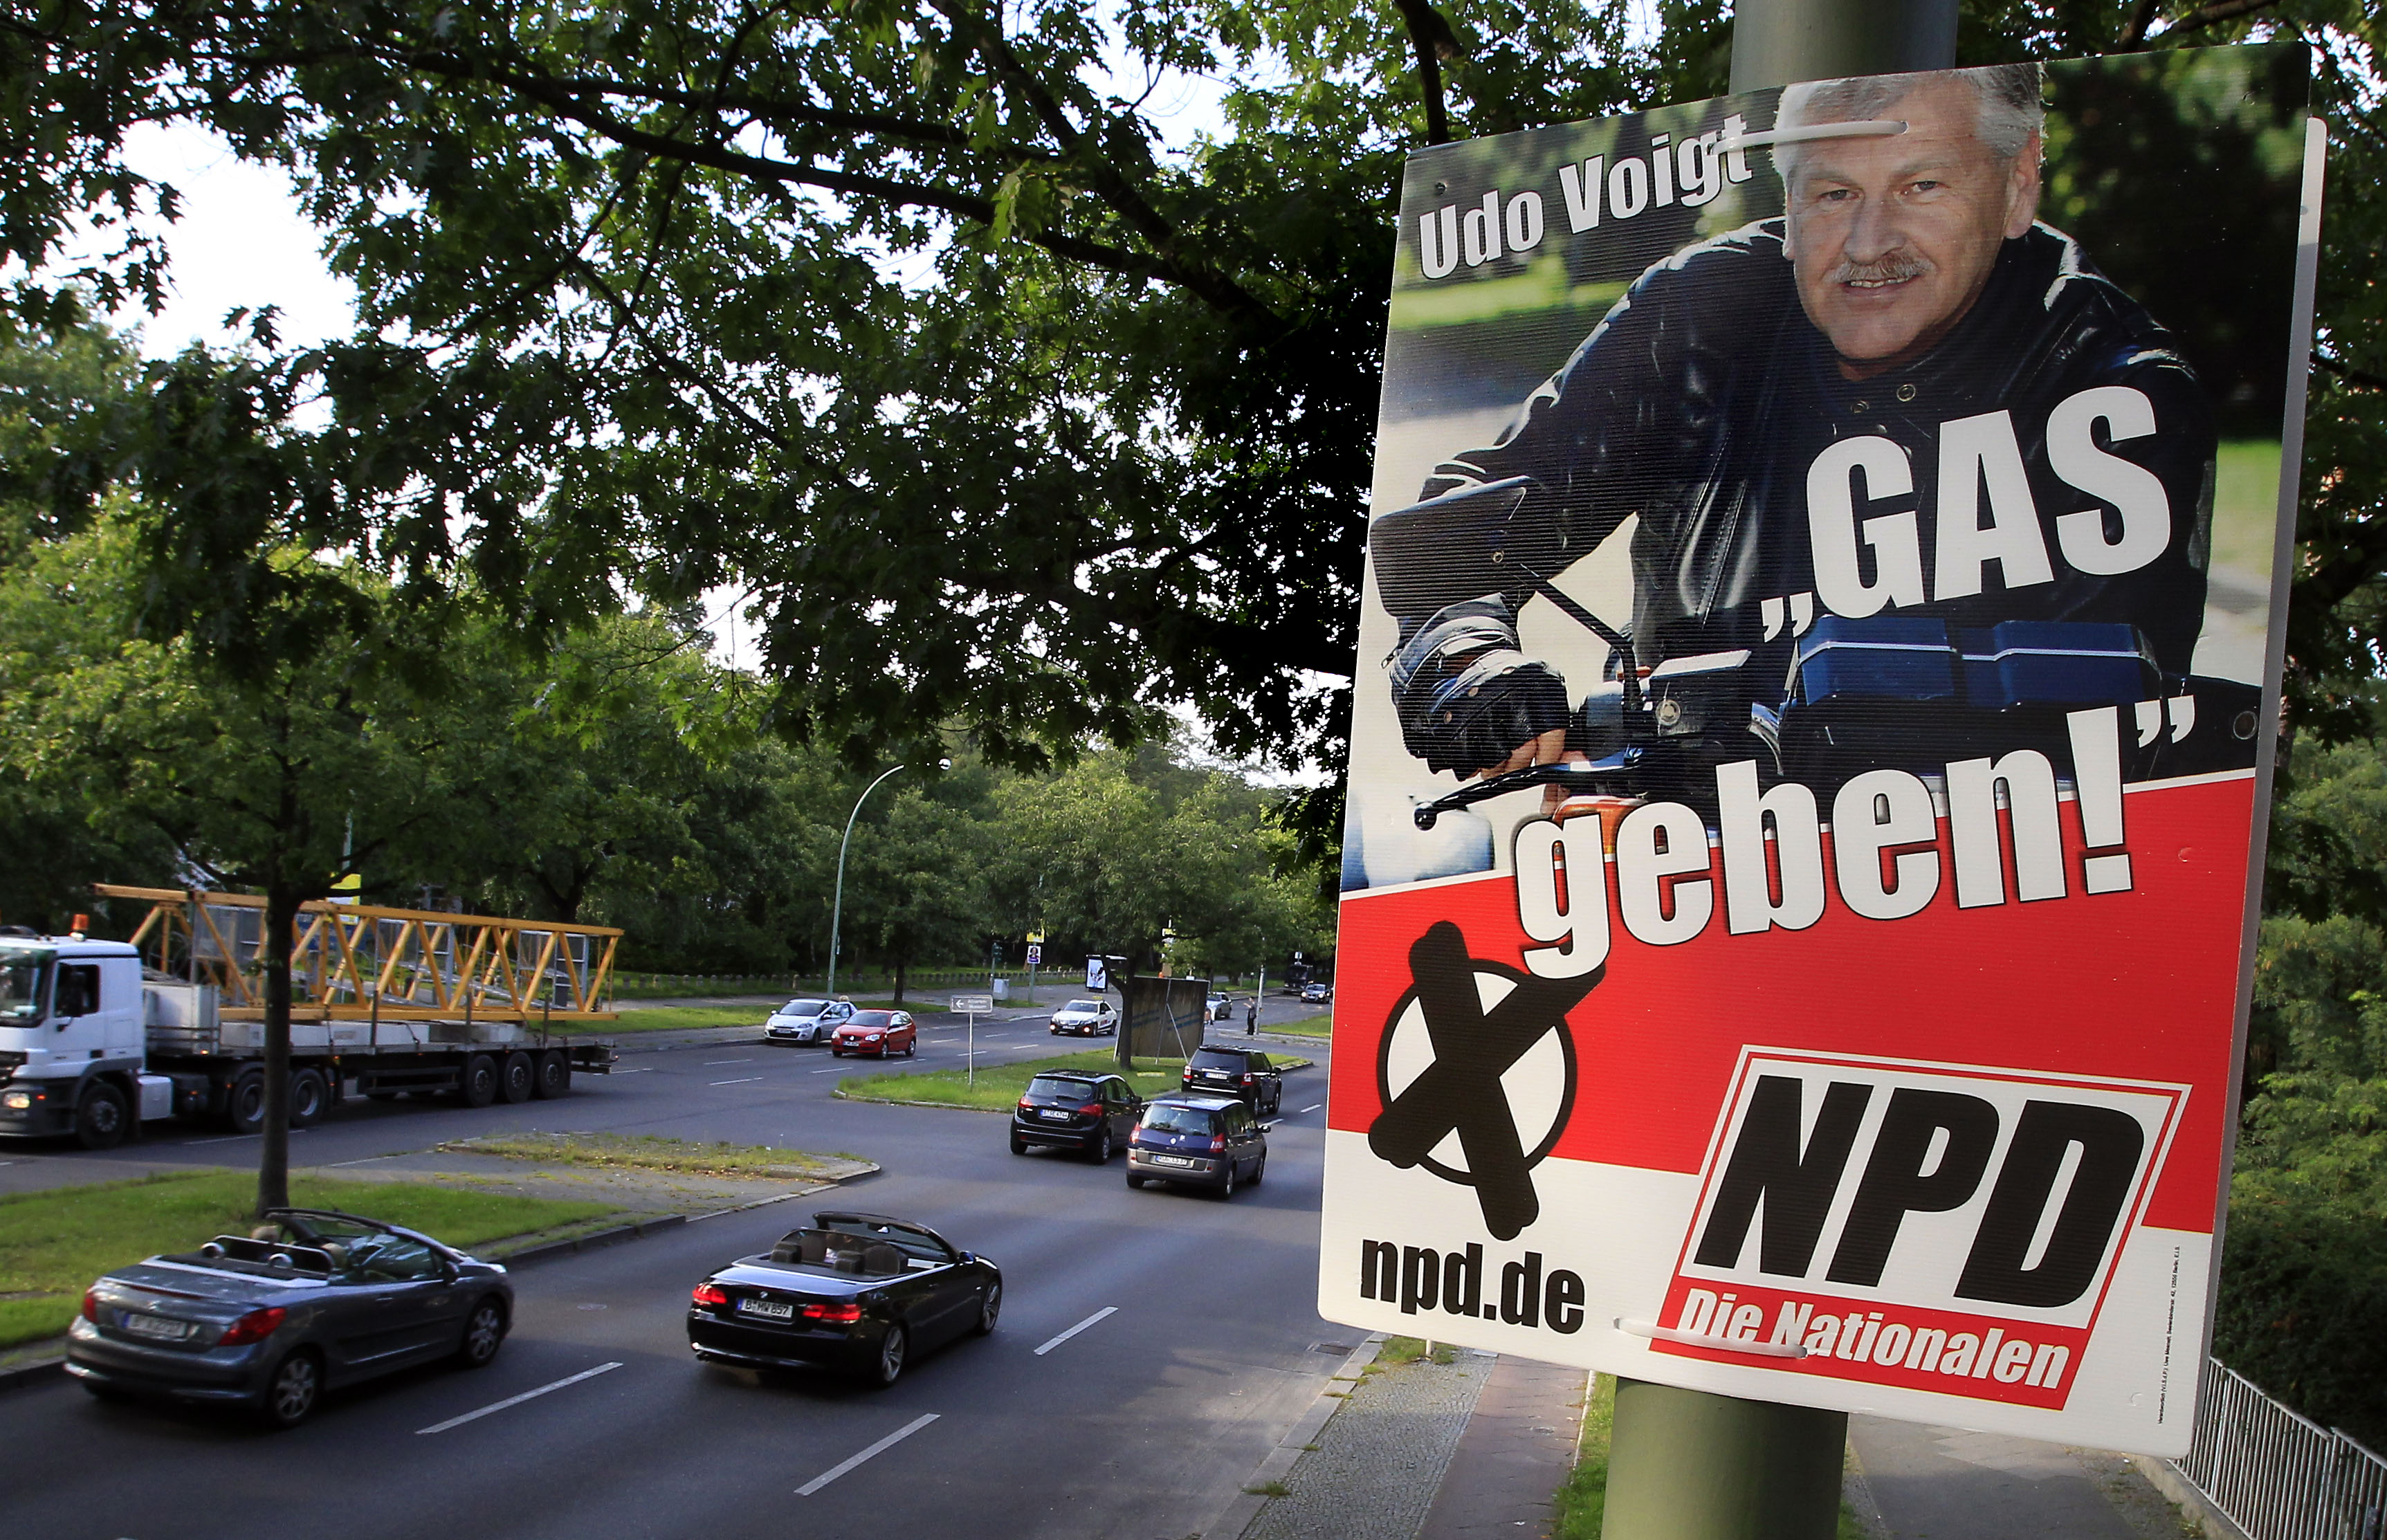 Valaffisch för NPD med den hårt kritiserade sloganen "GAS geben!", "Step on the gas!".